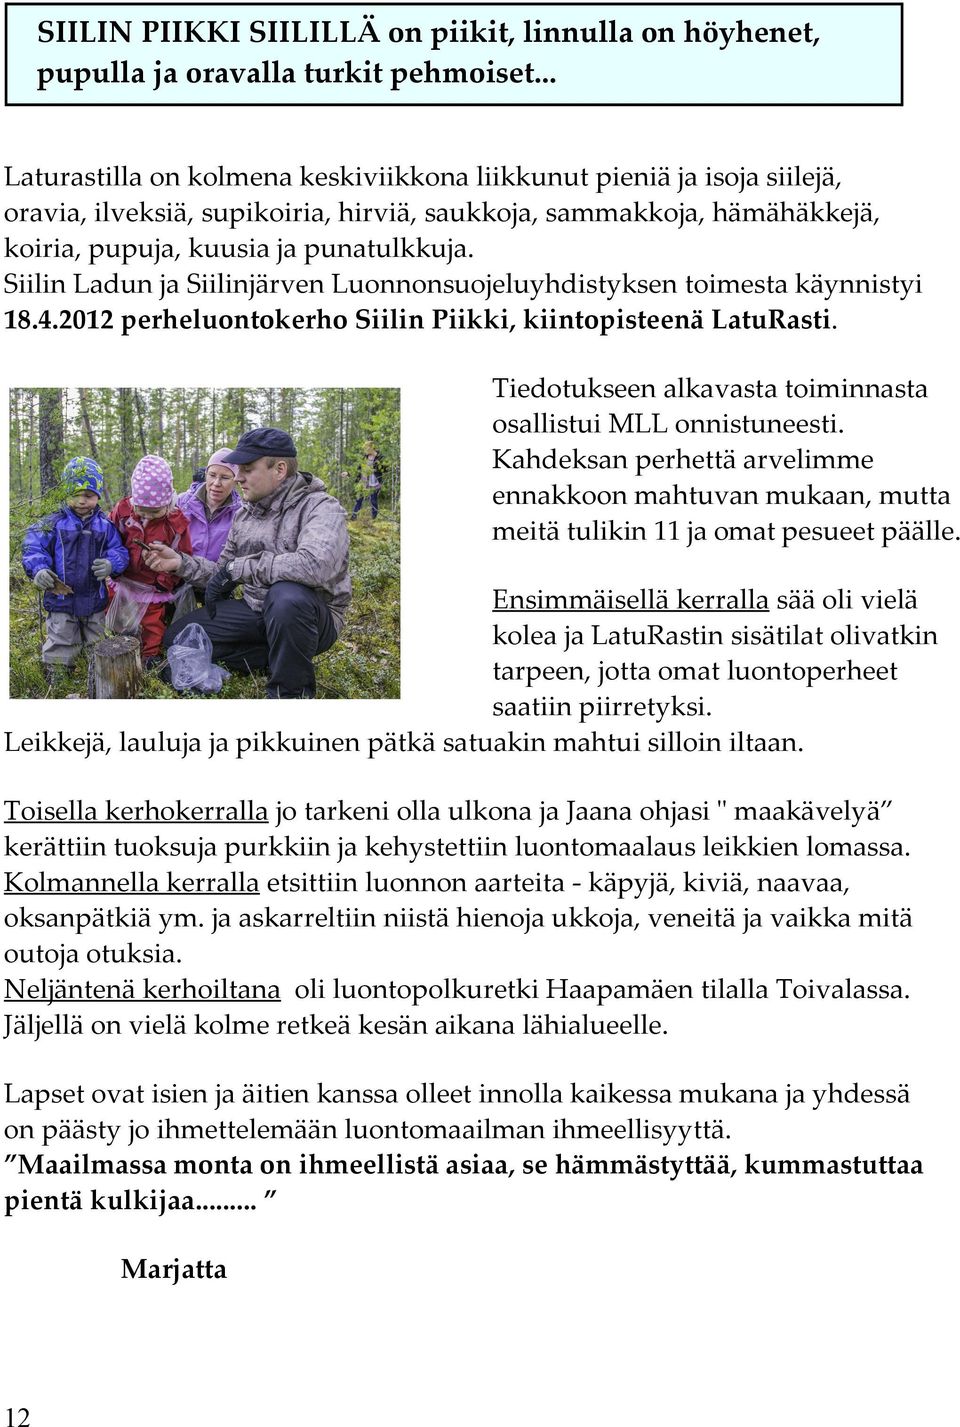 Siilin Ladun ja Siilinjärven Luonnonsuojeluyhdistyksen toimesta käynnistyi 18.4.2012 perheluontokerho Siilin Piikki, kiintopisteenä LatuRasti.